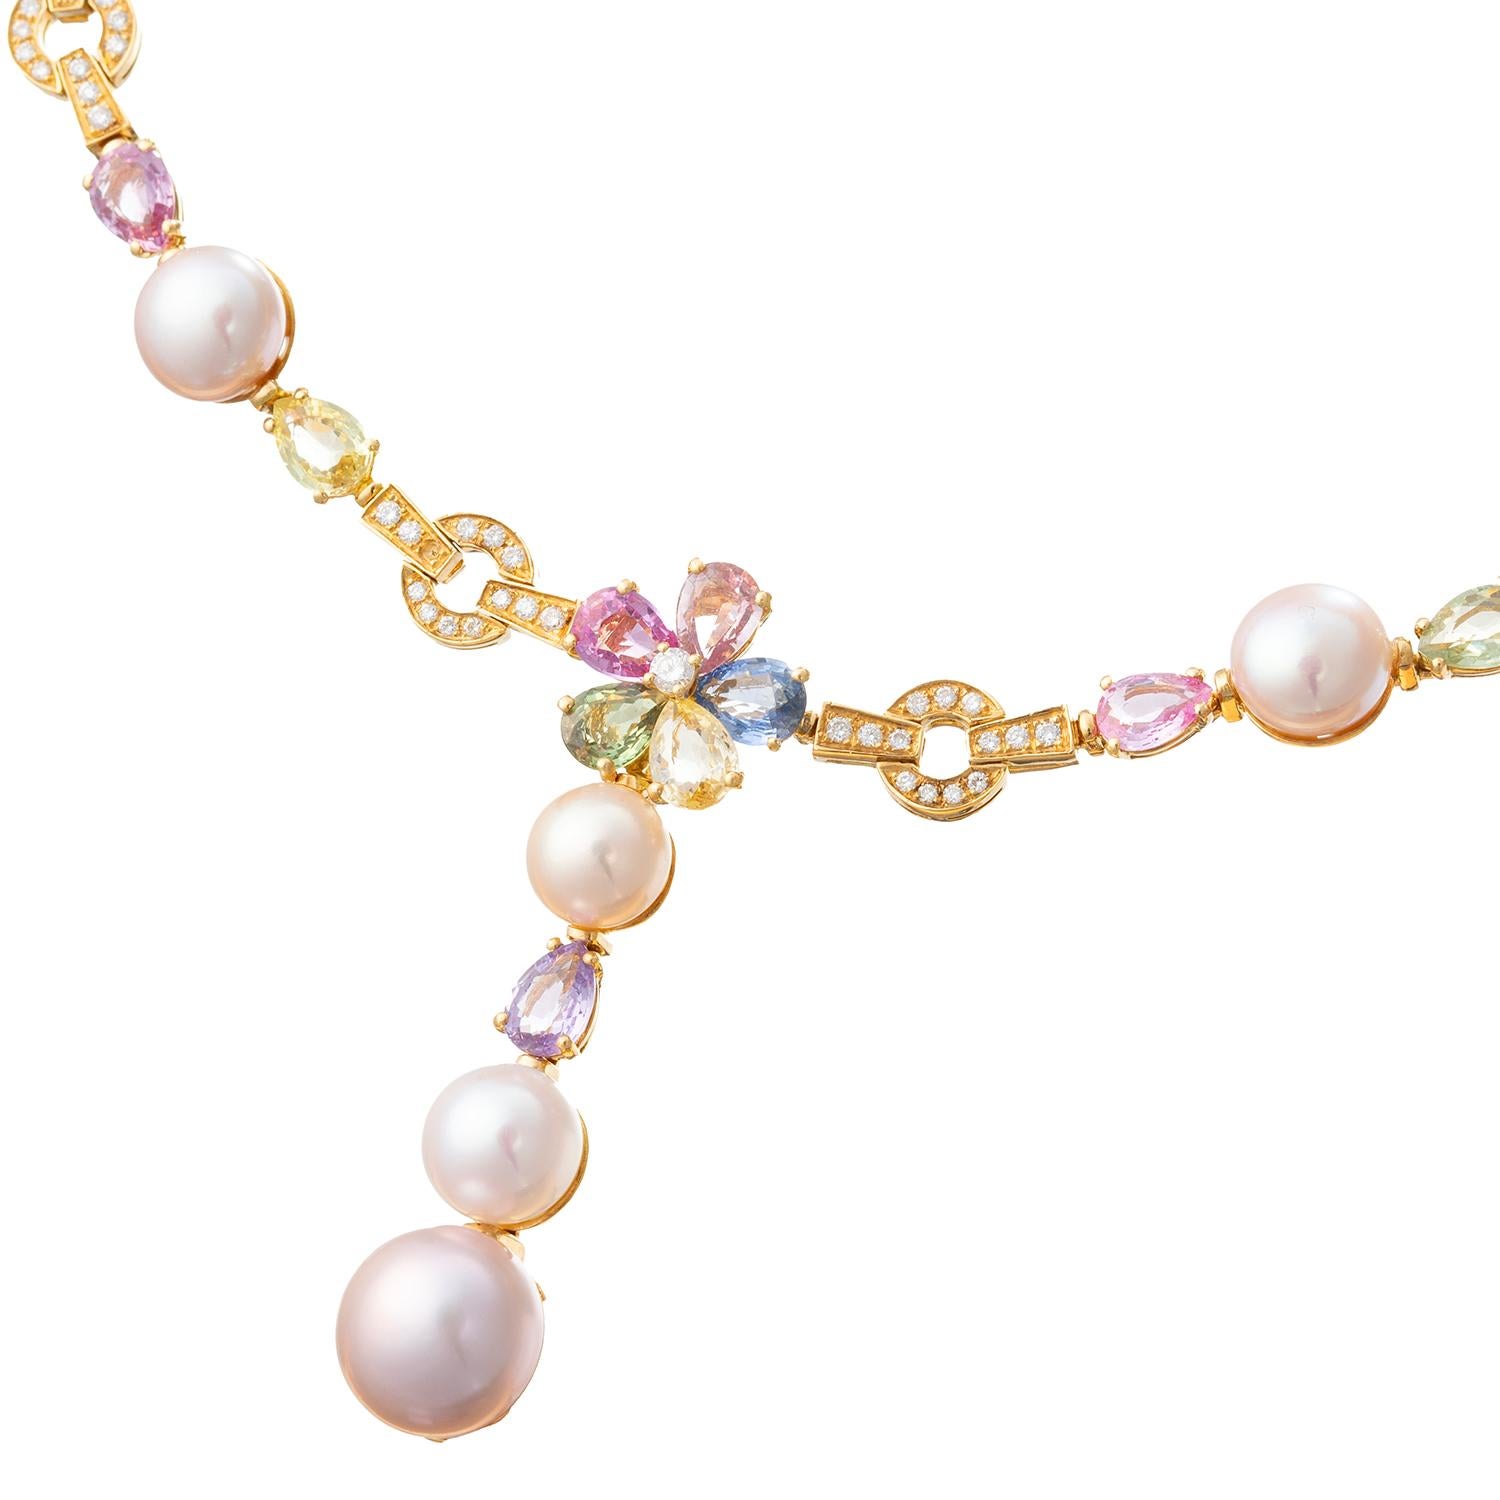 Brilliant Cut Bvlgari Multicolored Sapphire Pearl Diamond Drop Necklace